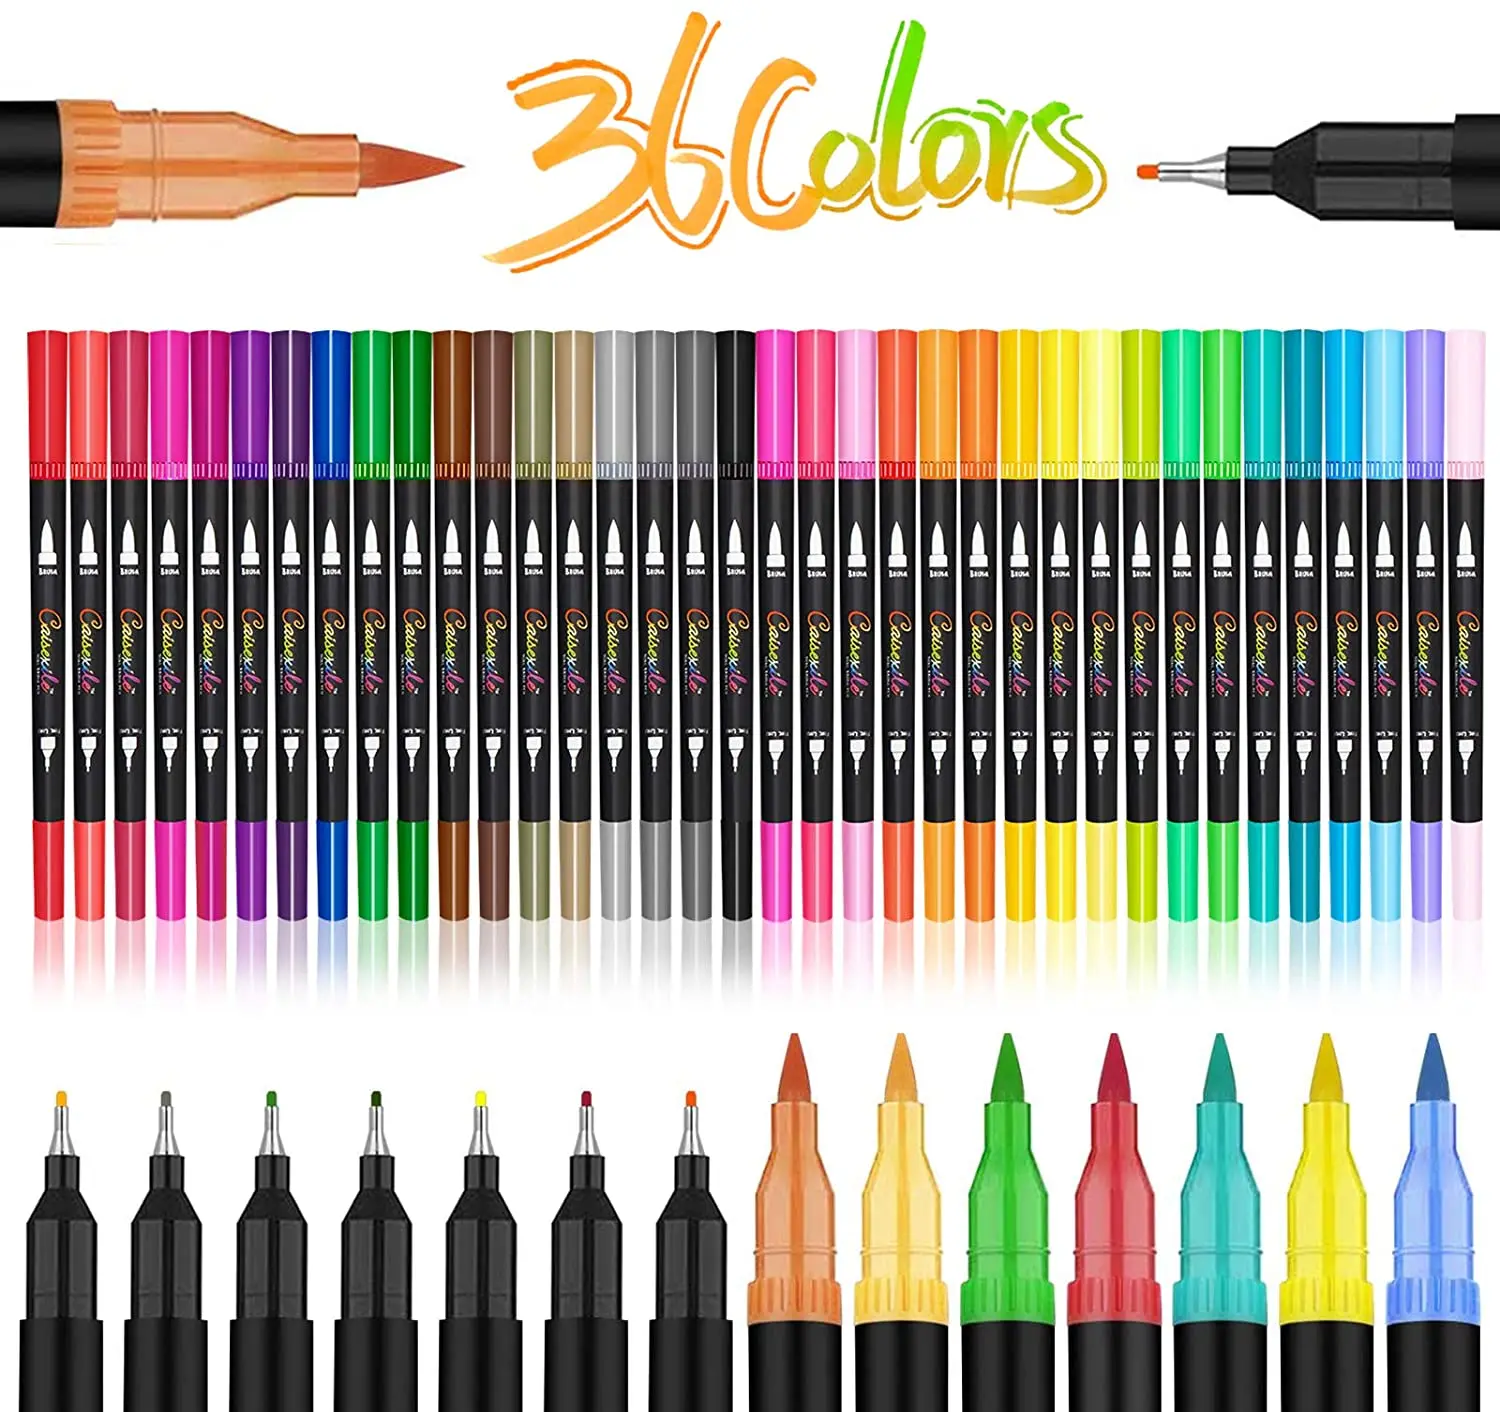 

Ручки с двумя наконечниками, набор художественных маркеров 36 цветов с тонким наконечником Кисти для детей и взрослых, цветная книга для зап...